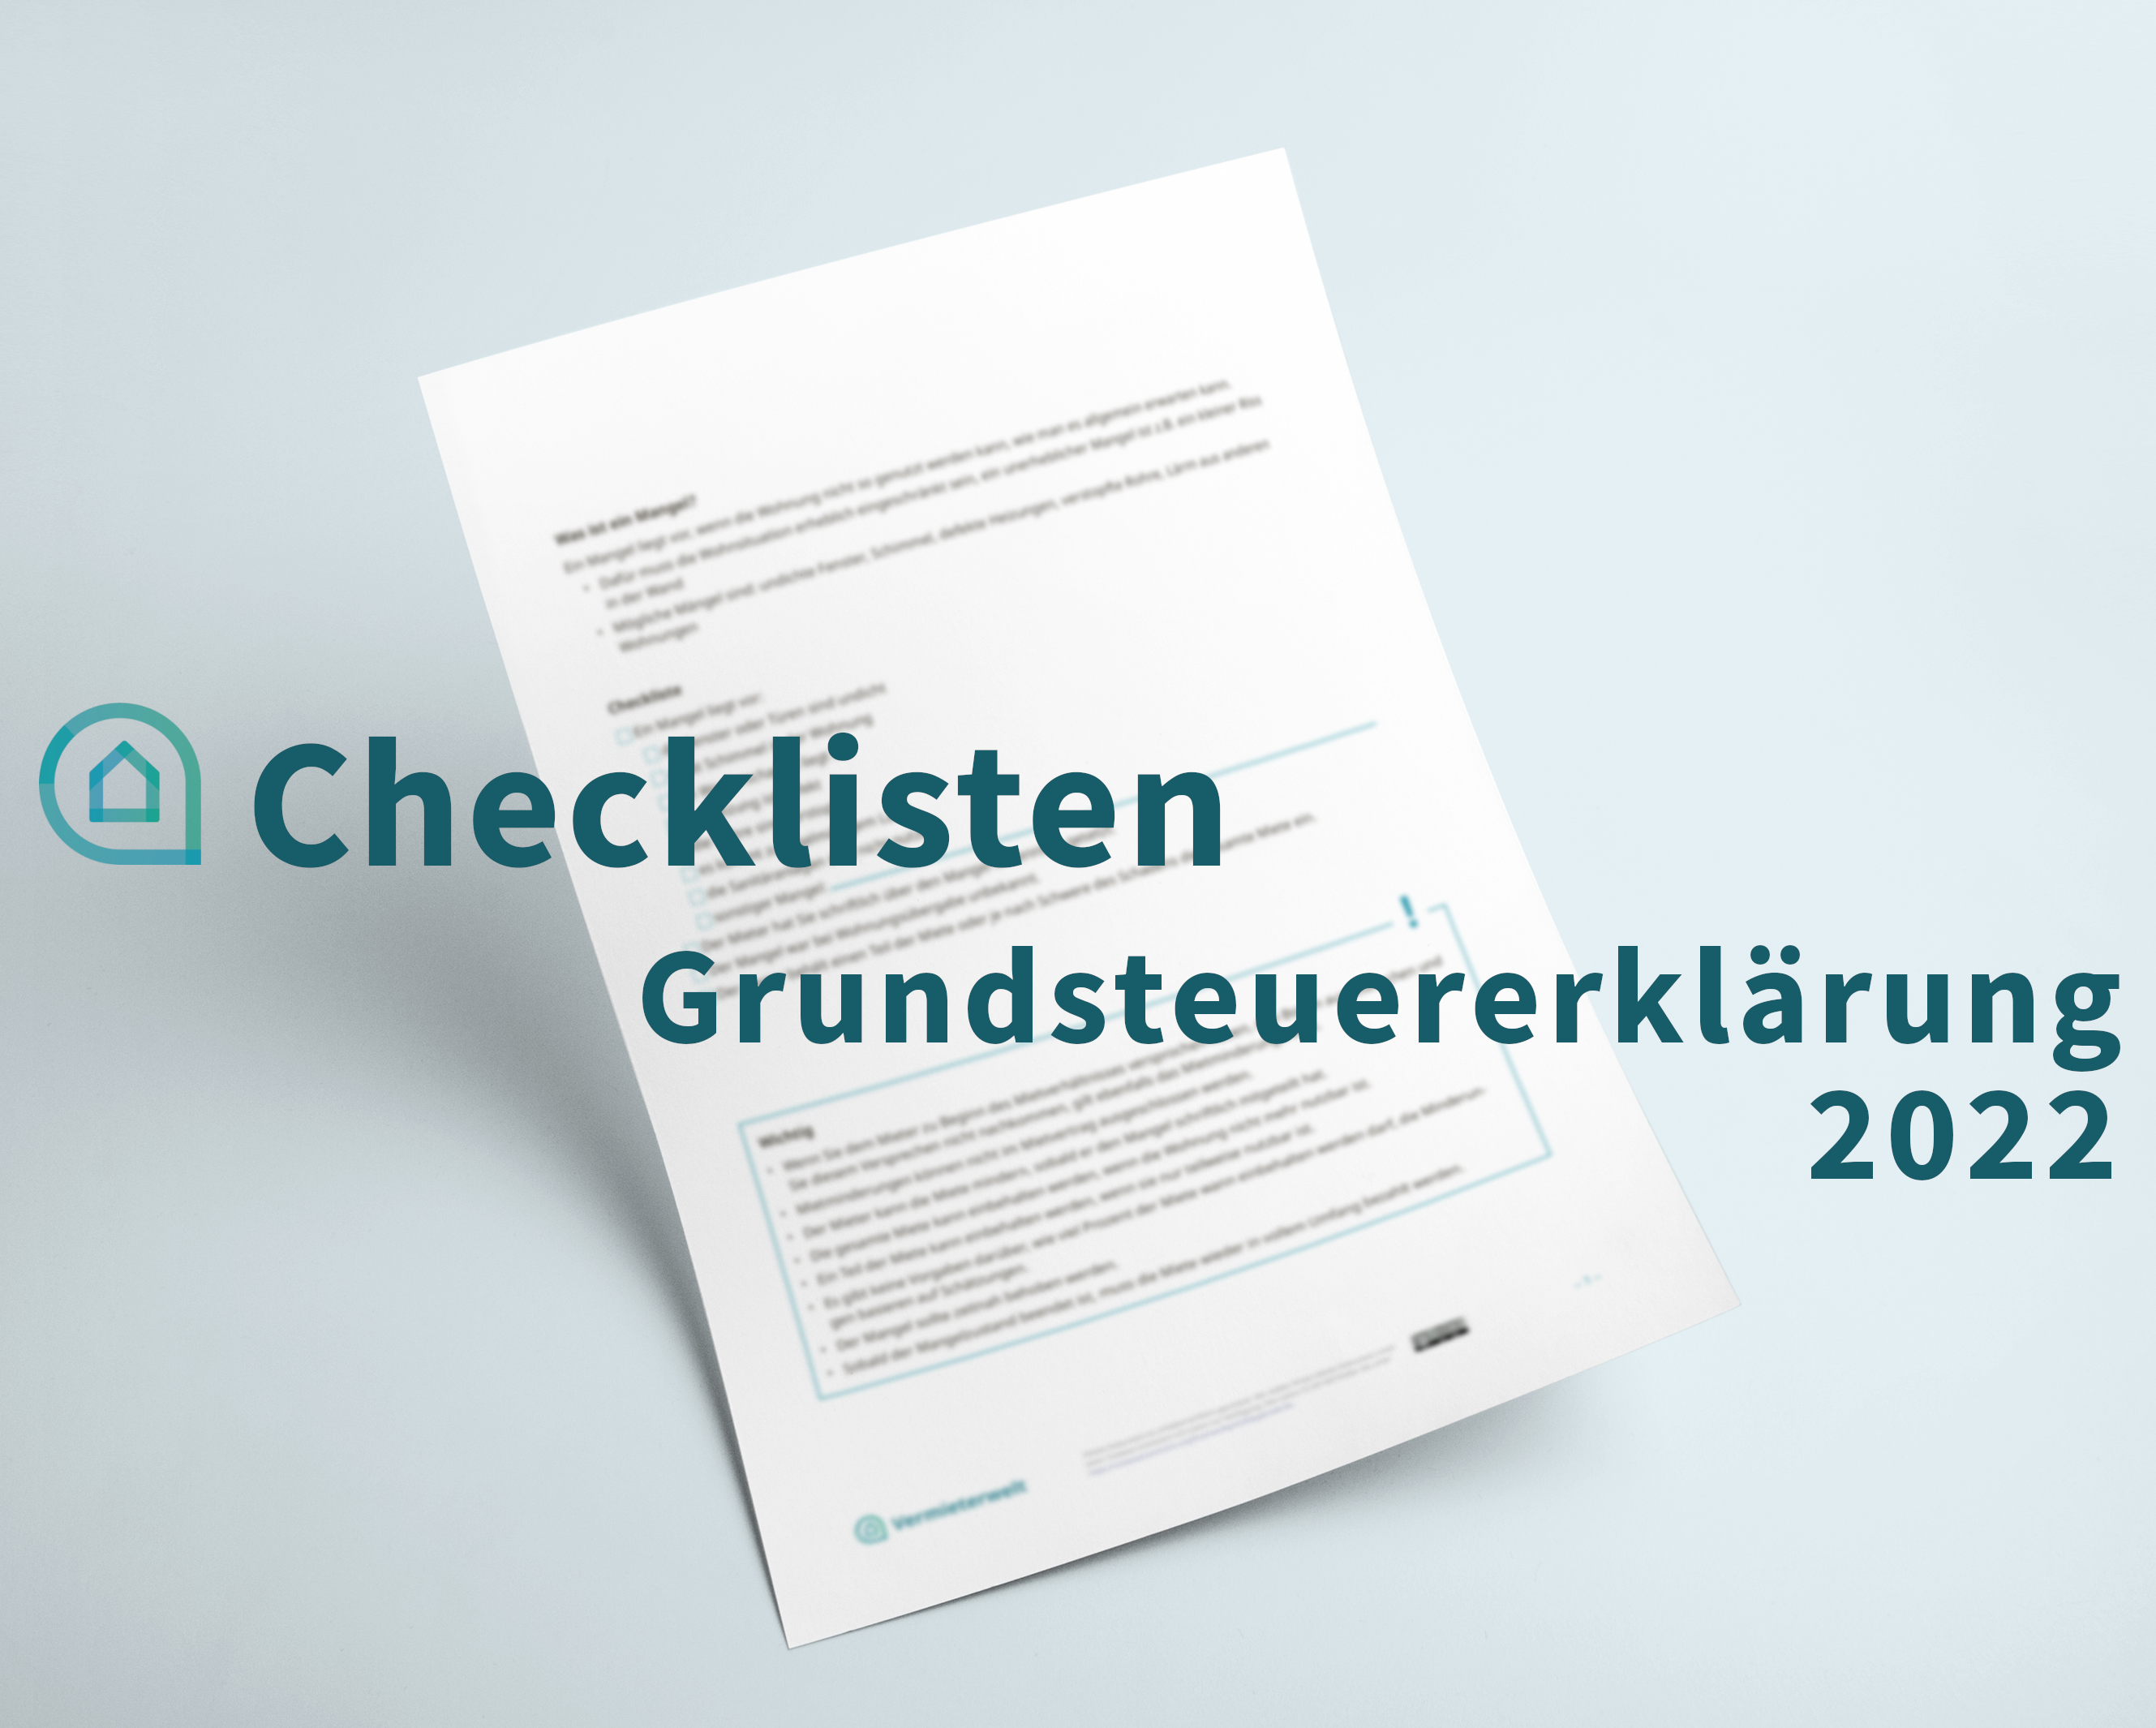 Checkliste Grundsteuererklärung 2022